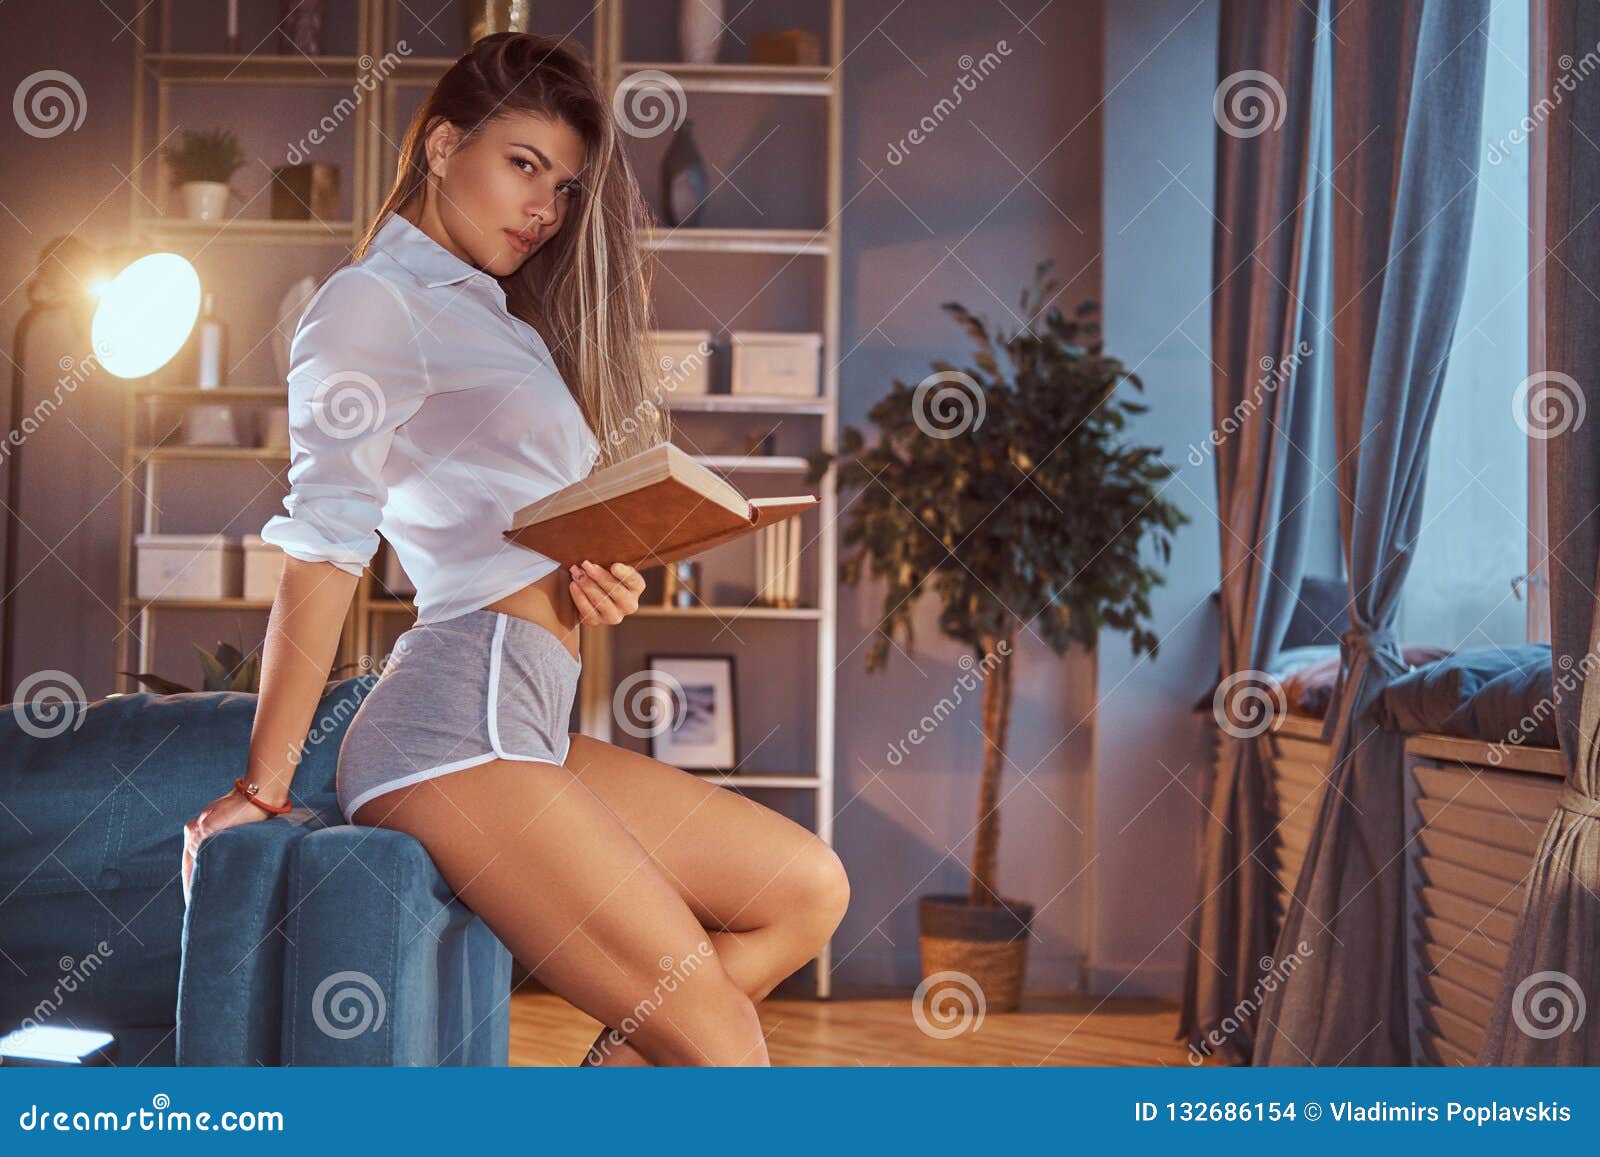 Сексуальные девушки в просвечивающем нижнем белье фото